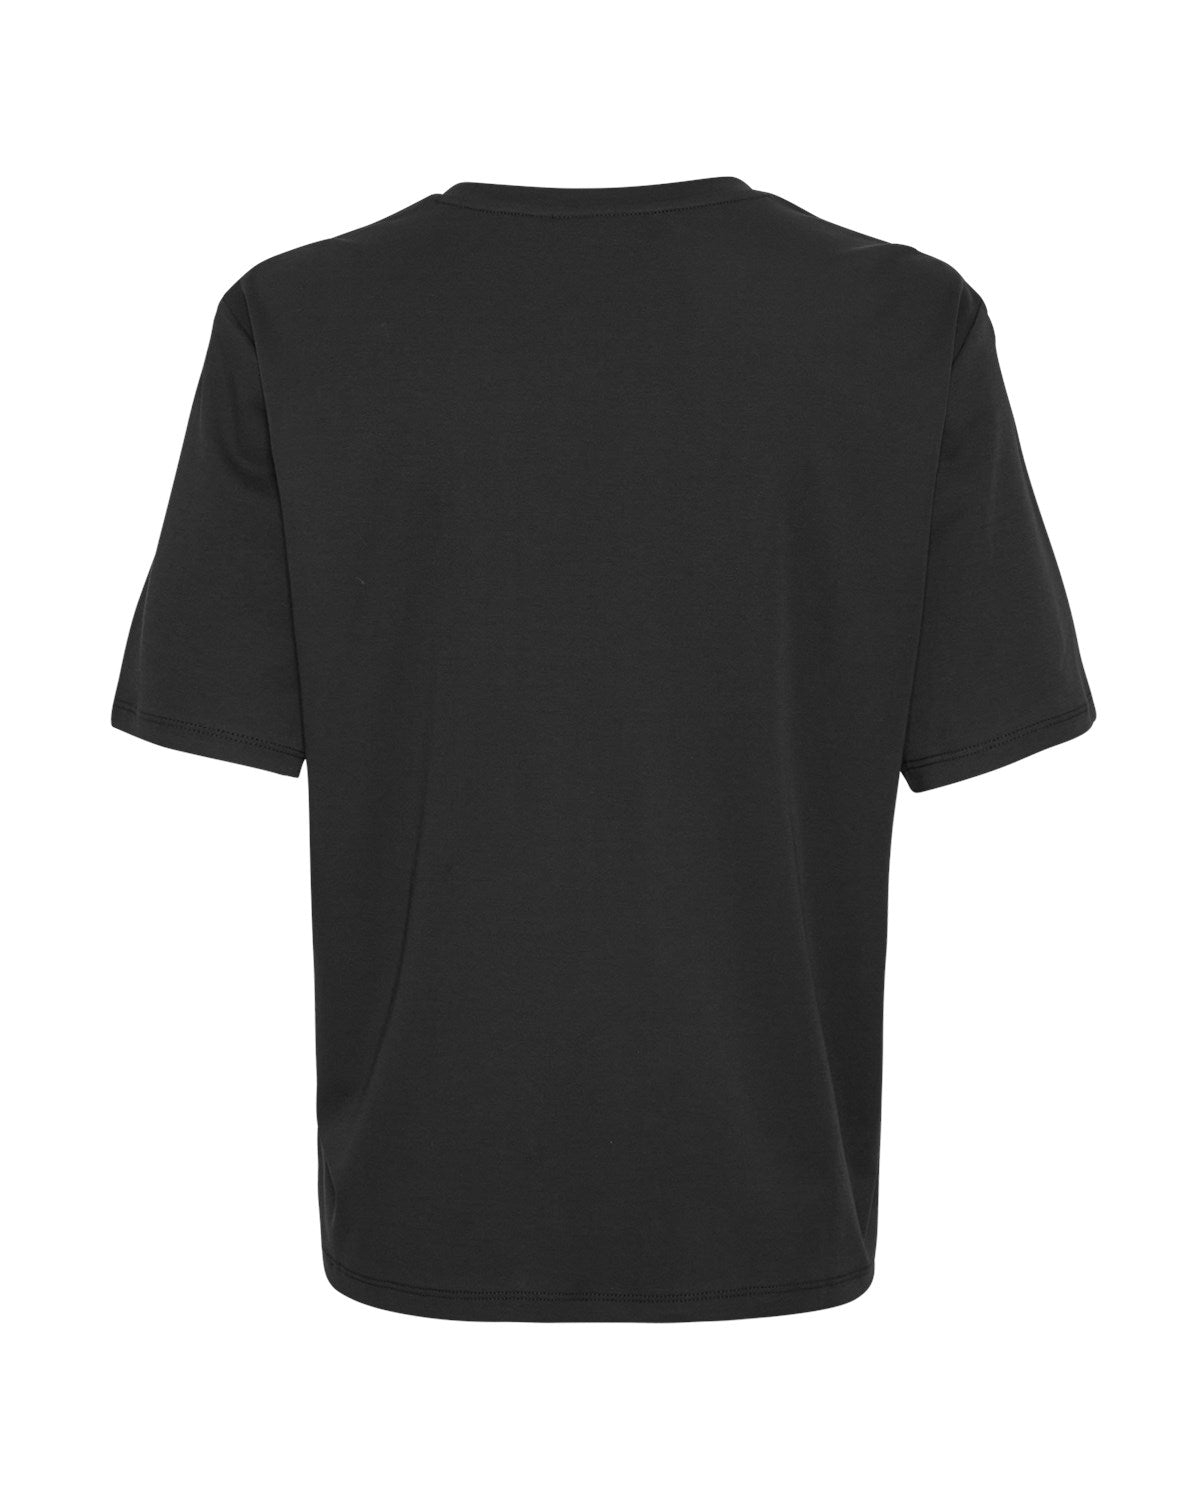 MSCH MELEA T-Shirt, schwarz